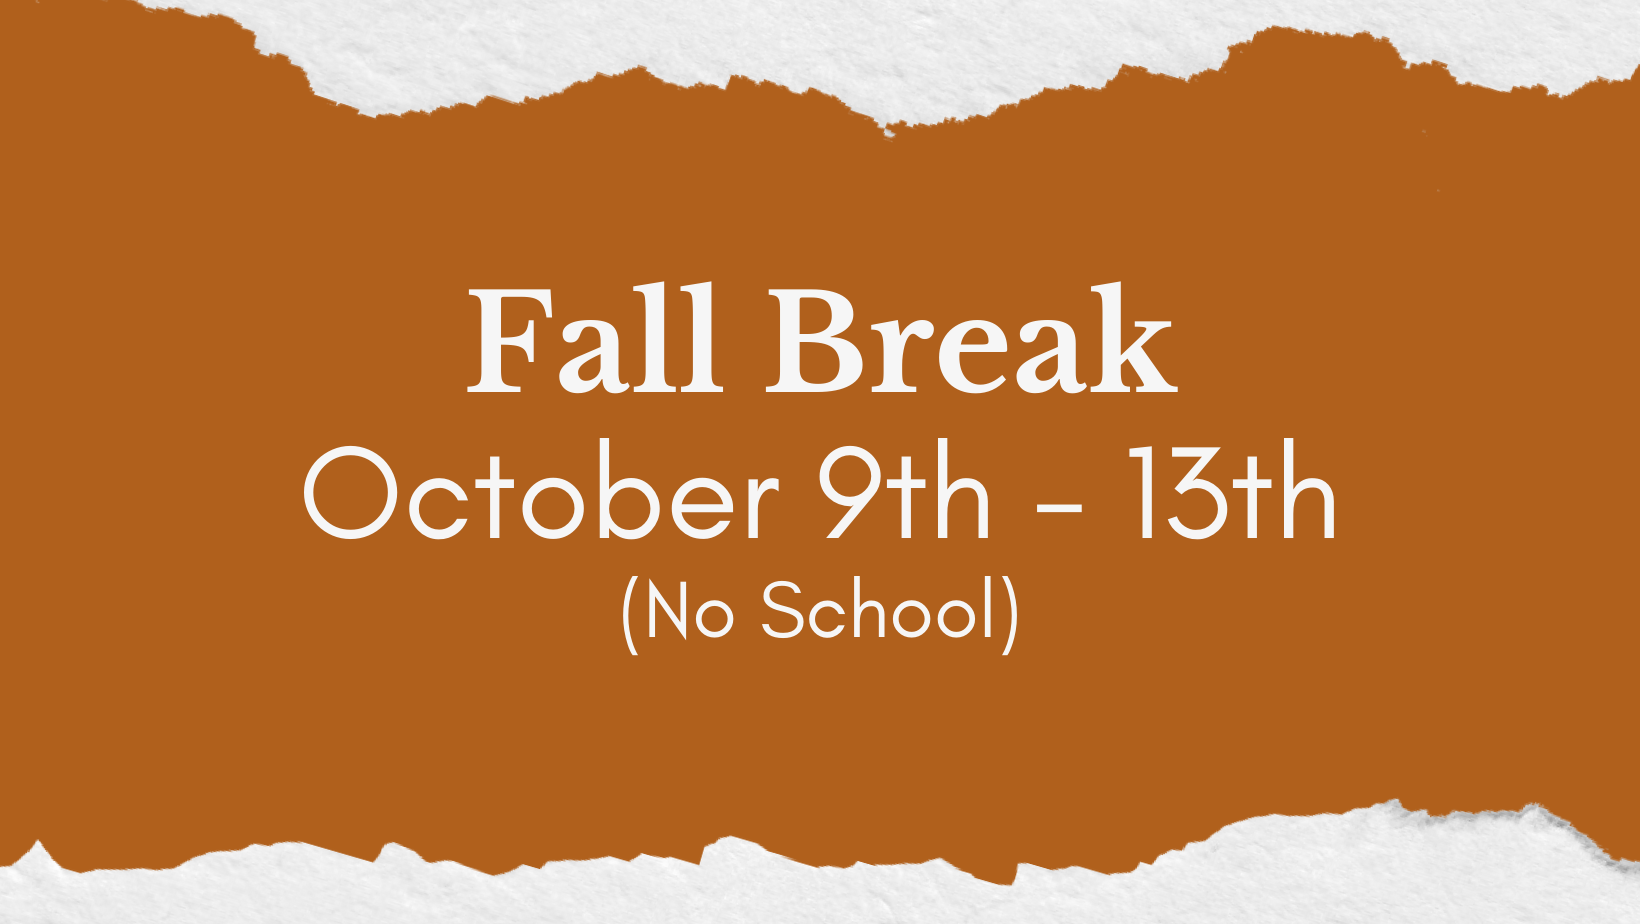 Fall Break image